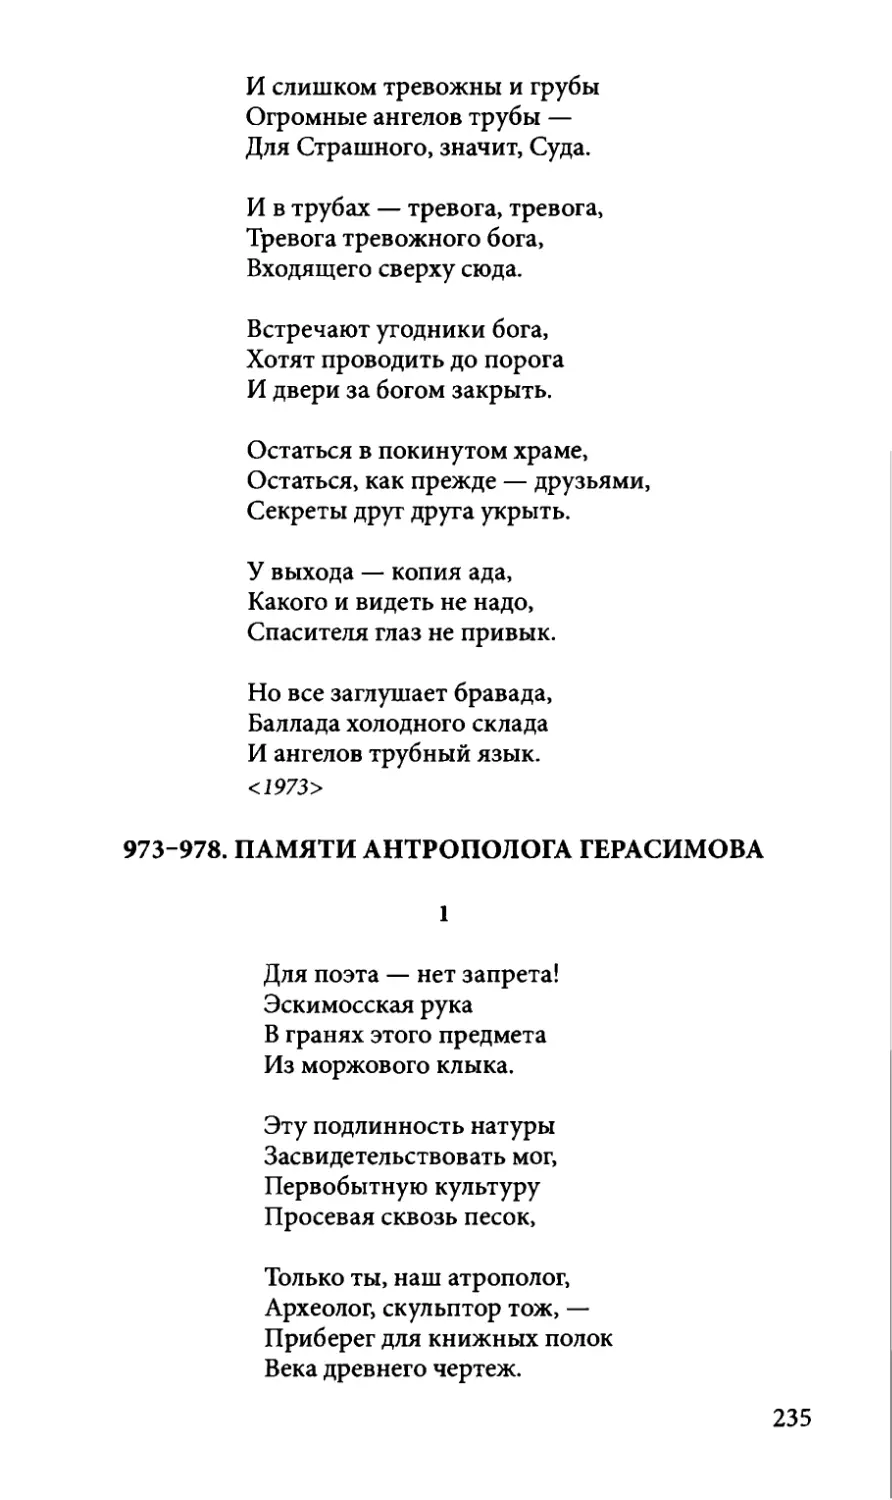 973-978. Памяти антрополога Герасимова